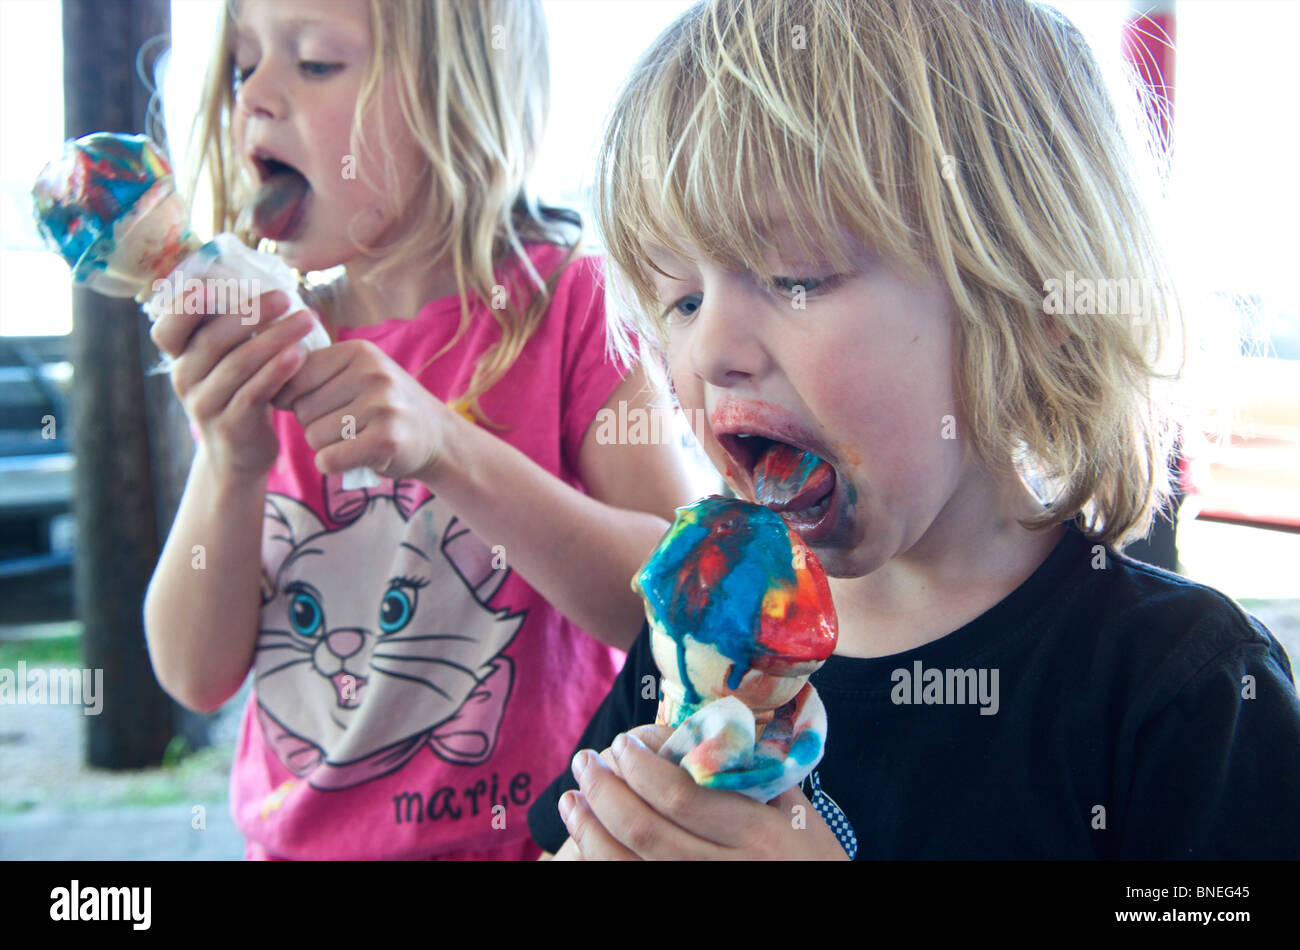 Kleinkinder Essen bunten Eis mit vielen Farbstoffe, USA Stockfoto